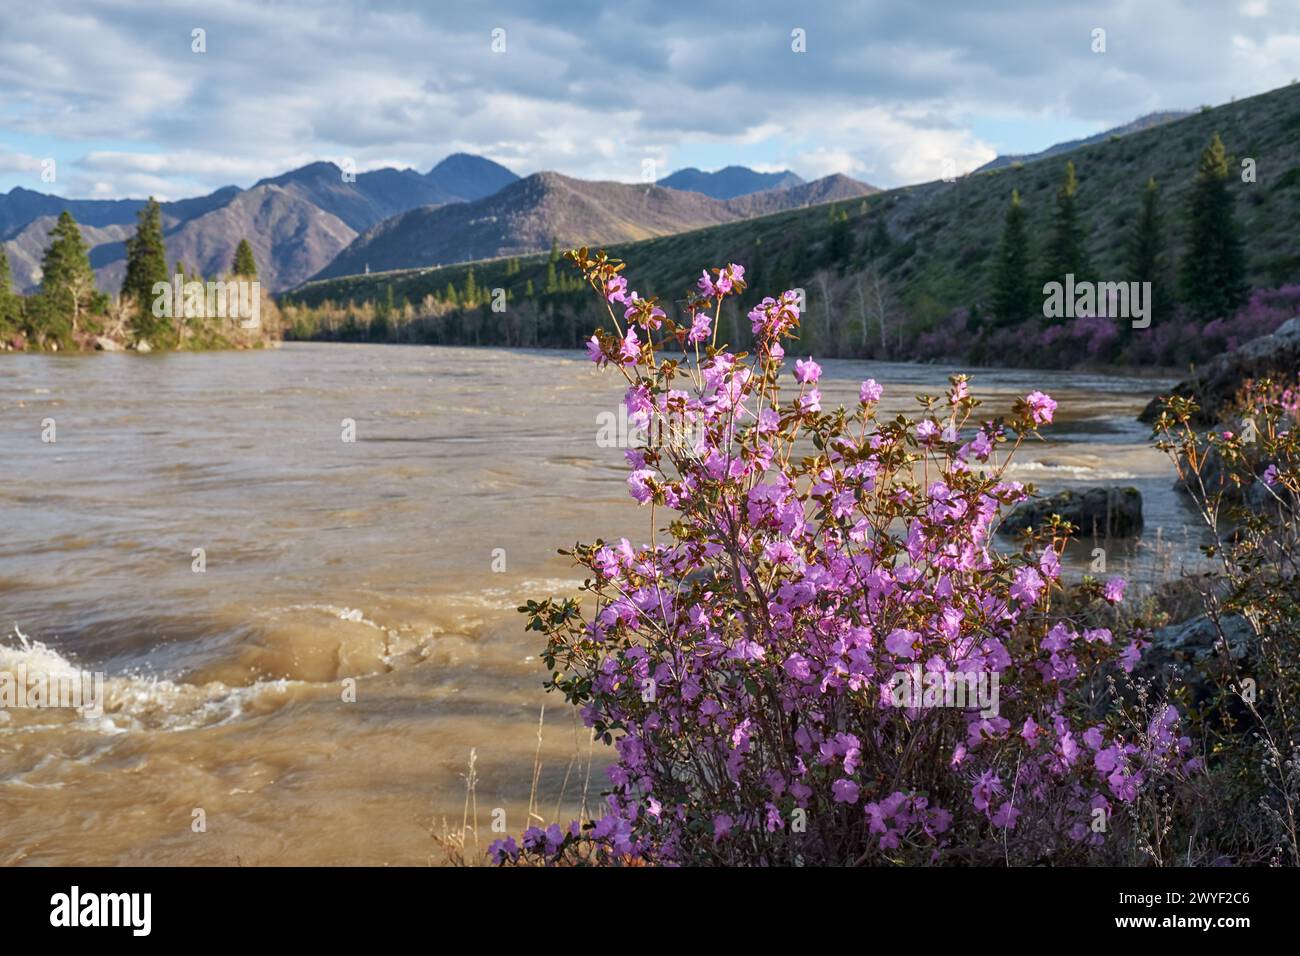 Rododendro dauricum cespugli con fiori (nomi popolari bagulnik, maralnik) vicino al fiume Altai Katun. Le montagne sono sullo sfondo. Foto Stock